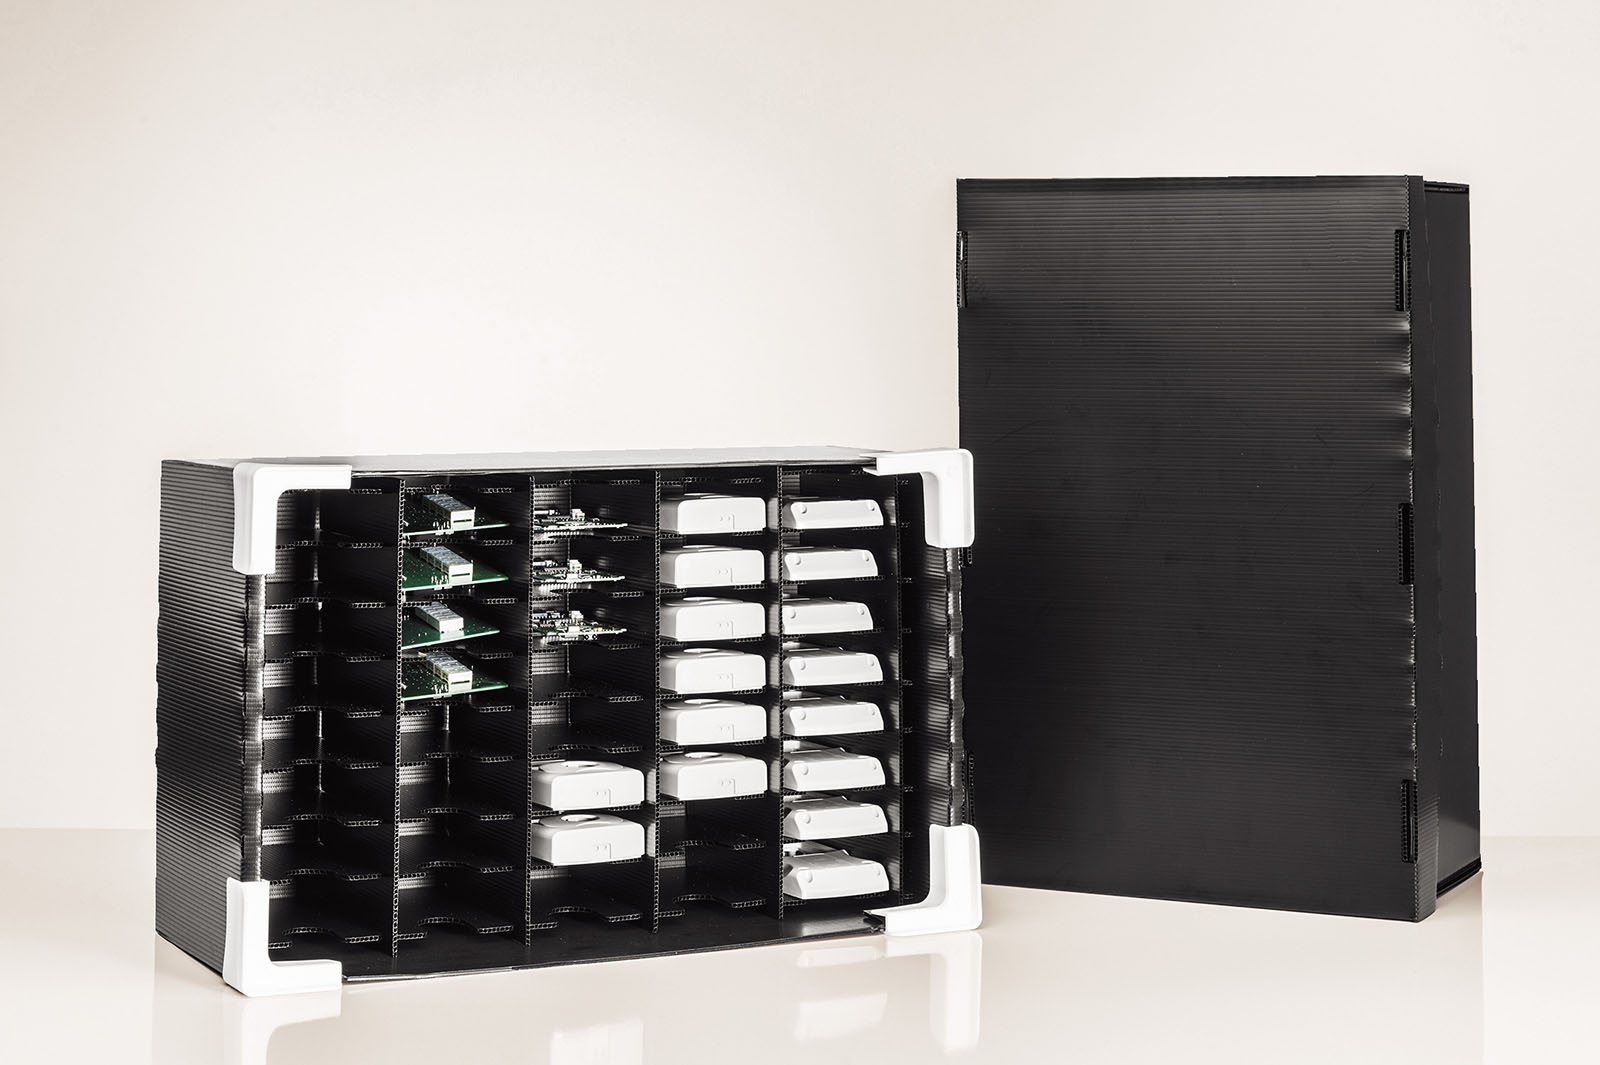 Die HKP Registerbox ist als Regalsystem für elektronische Bauteile bestens geeignet